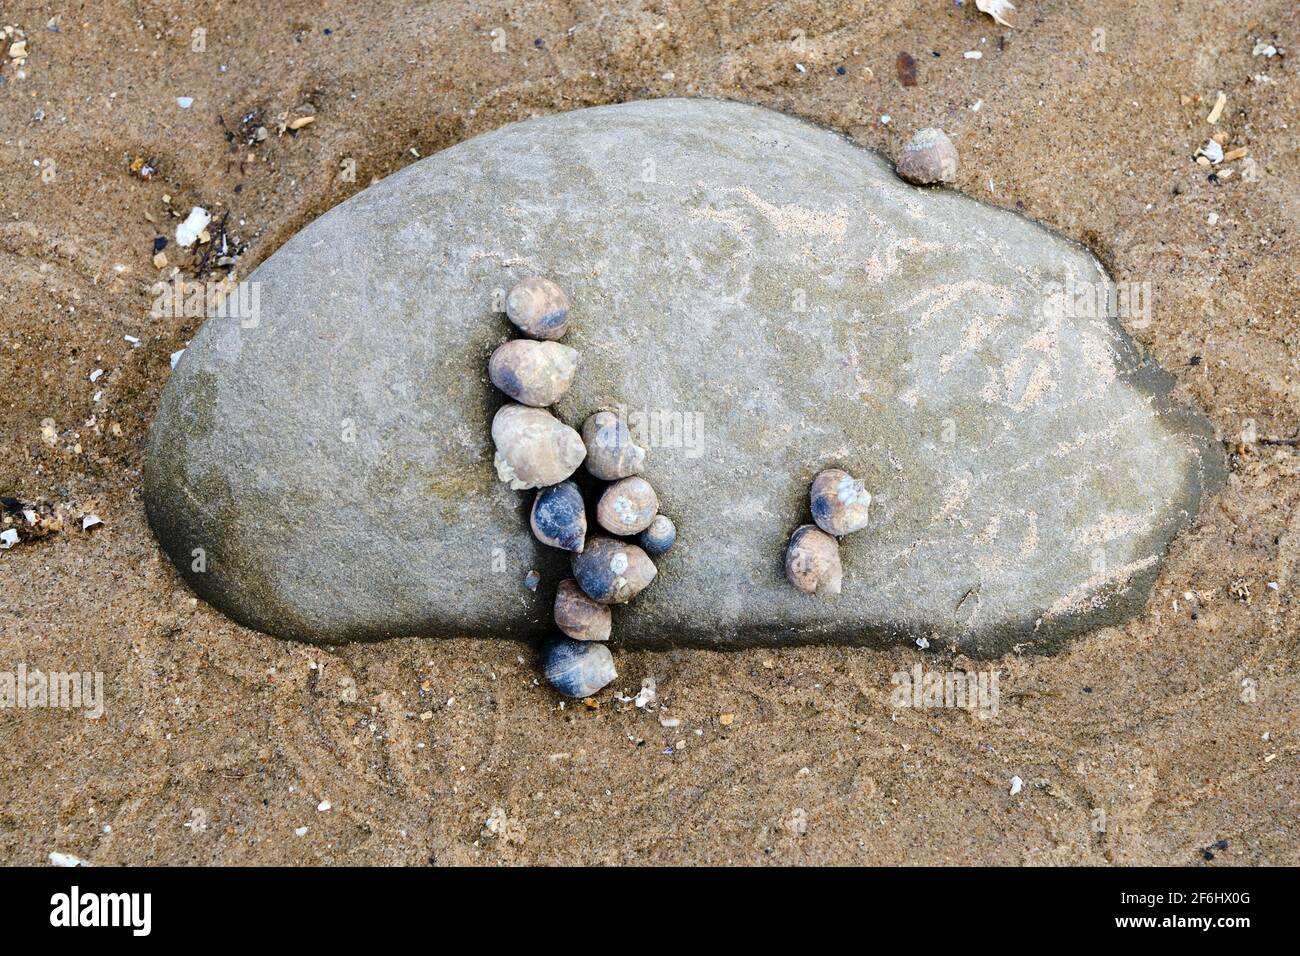 Escargots de mer dans un motif intéressant sur une grande pierre à Conwy Morfa, pays de Galles Banque D'Images